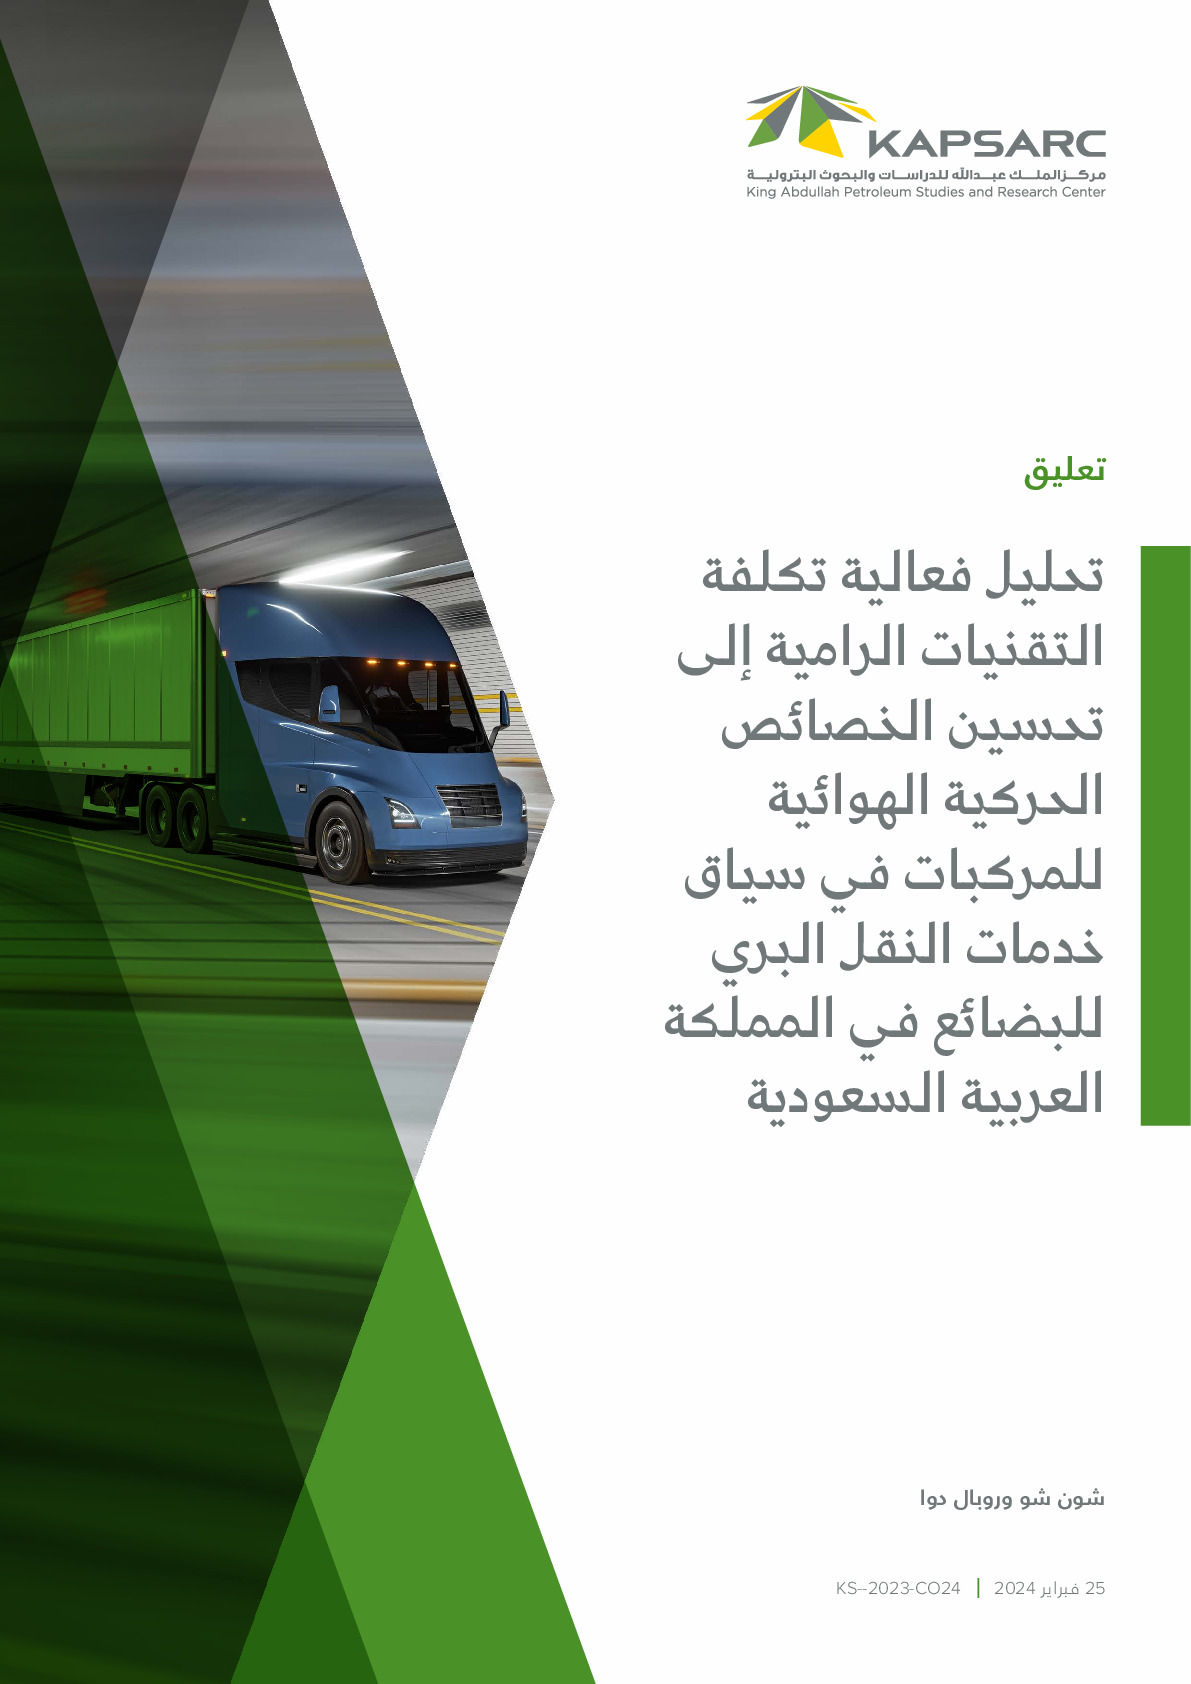 تحليل فعالية تكلفة التقنيات الرامية إلى تحسين الخصائص الحركية الهوائية للمركبات في سياق خدمات النقل البري للبضائع في المملكة العربية السعودية